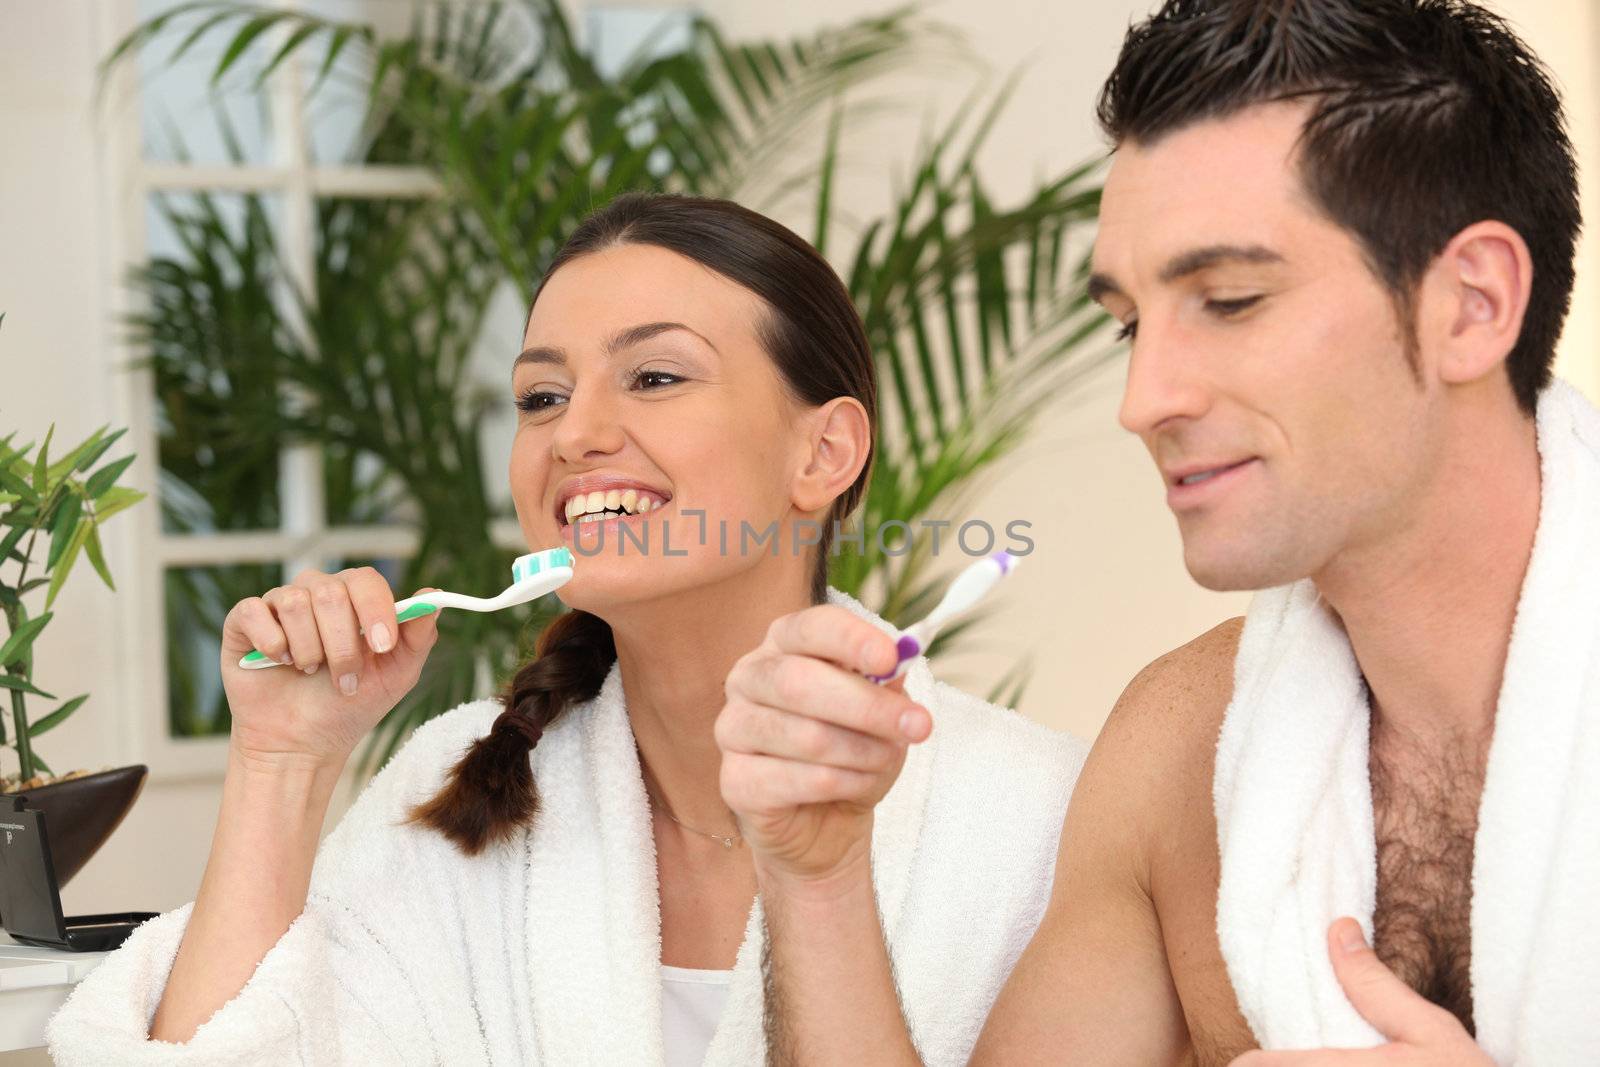 Couple brushing teeth in bathroom by phovoir